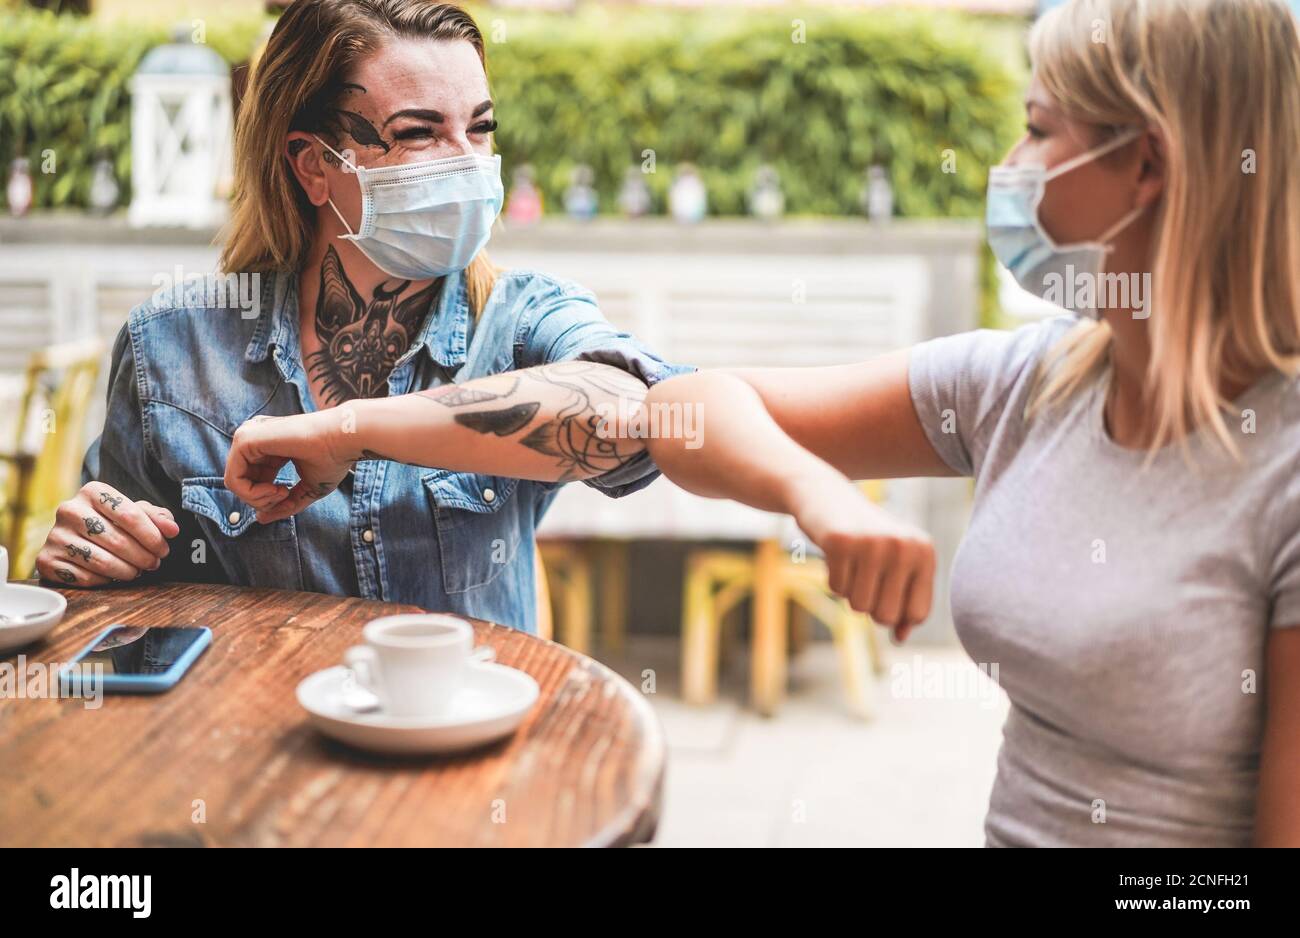 Junge Freundinnen stoßen ihre Ellbogen, anstatt mit zu grüßen Eine Umarmung - Vermeiden Sie die Ausbreitung von Coronavirus tragen schützende Masken - Soziale Distanz Konz Stockfoto